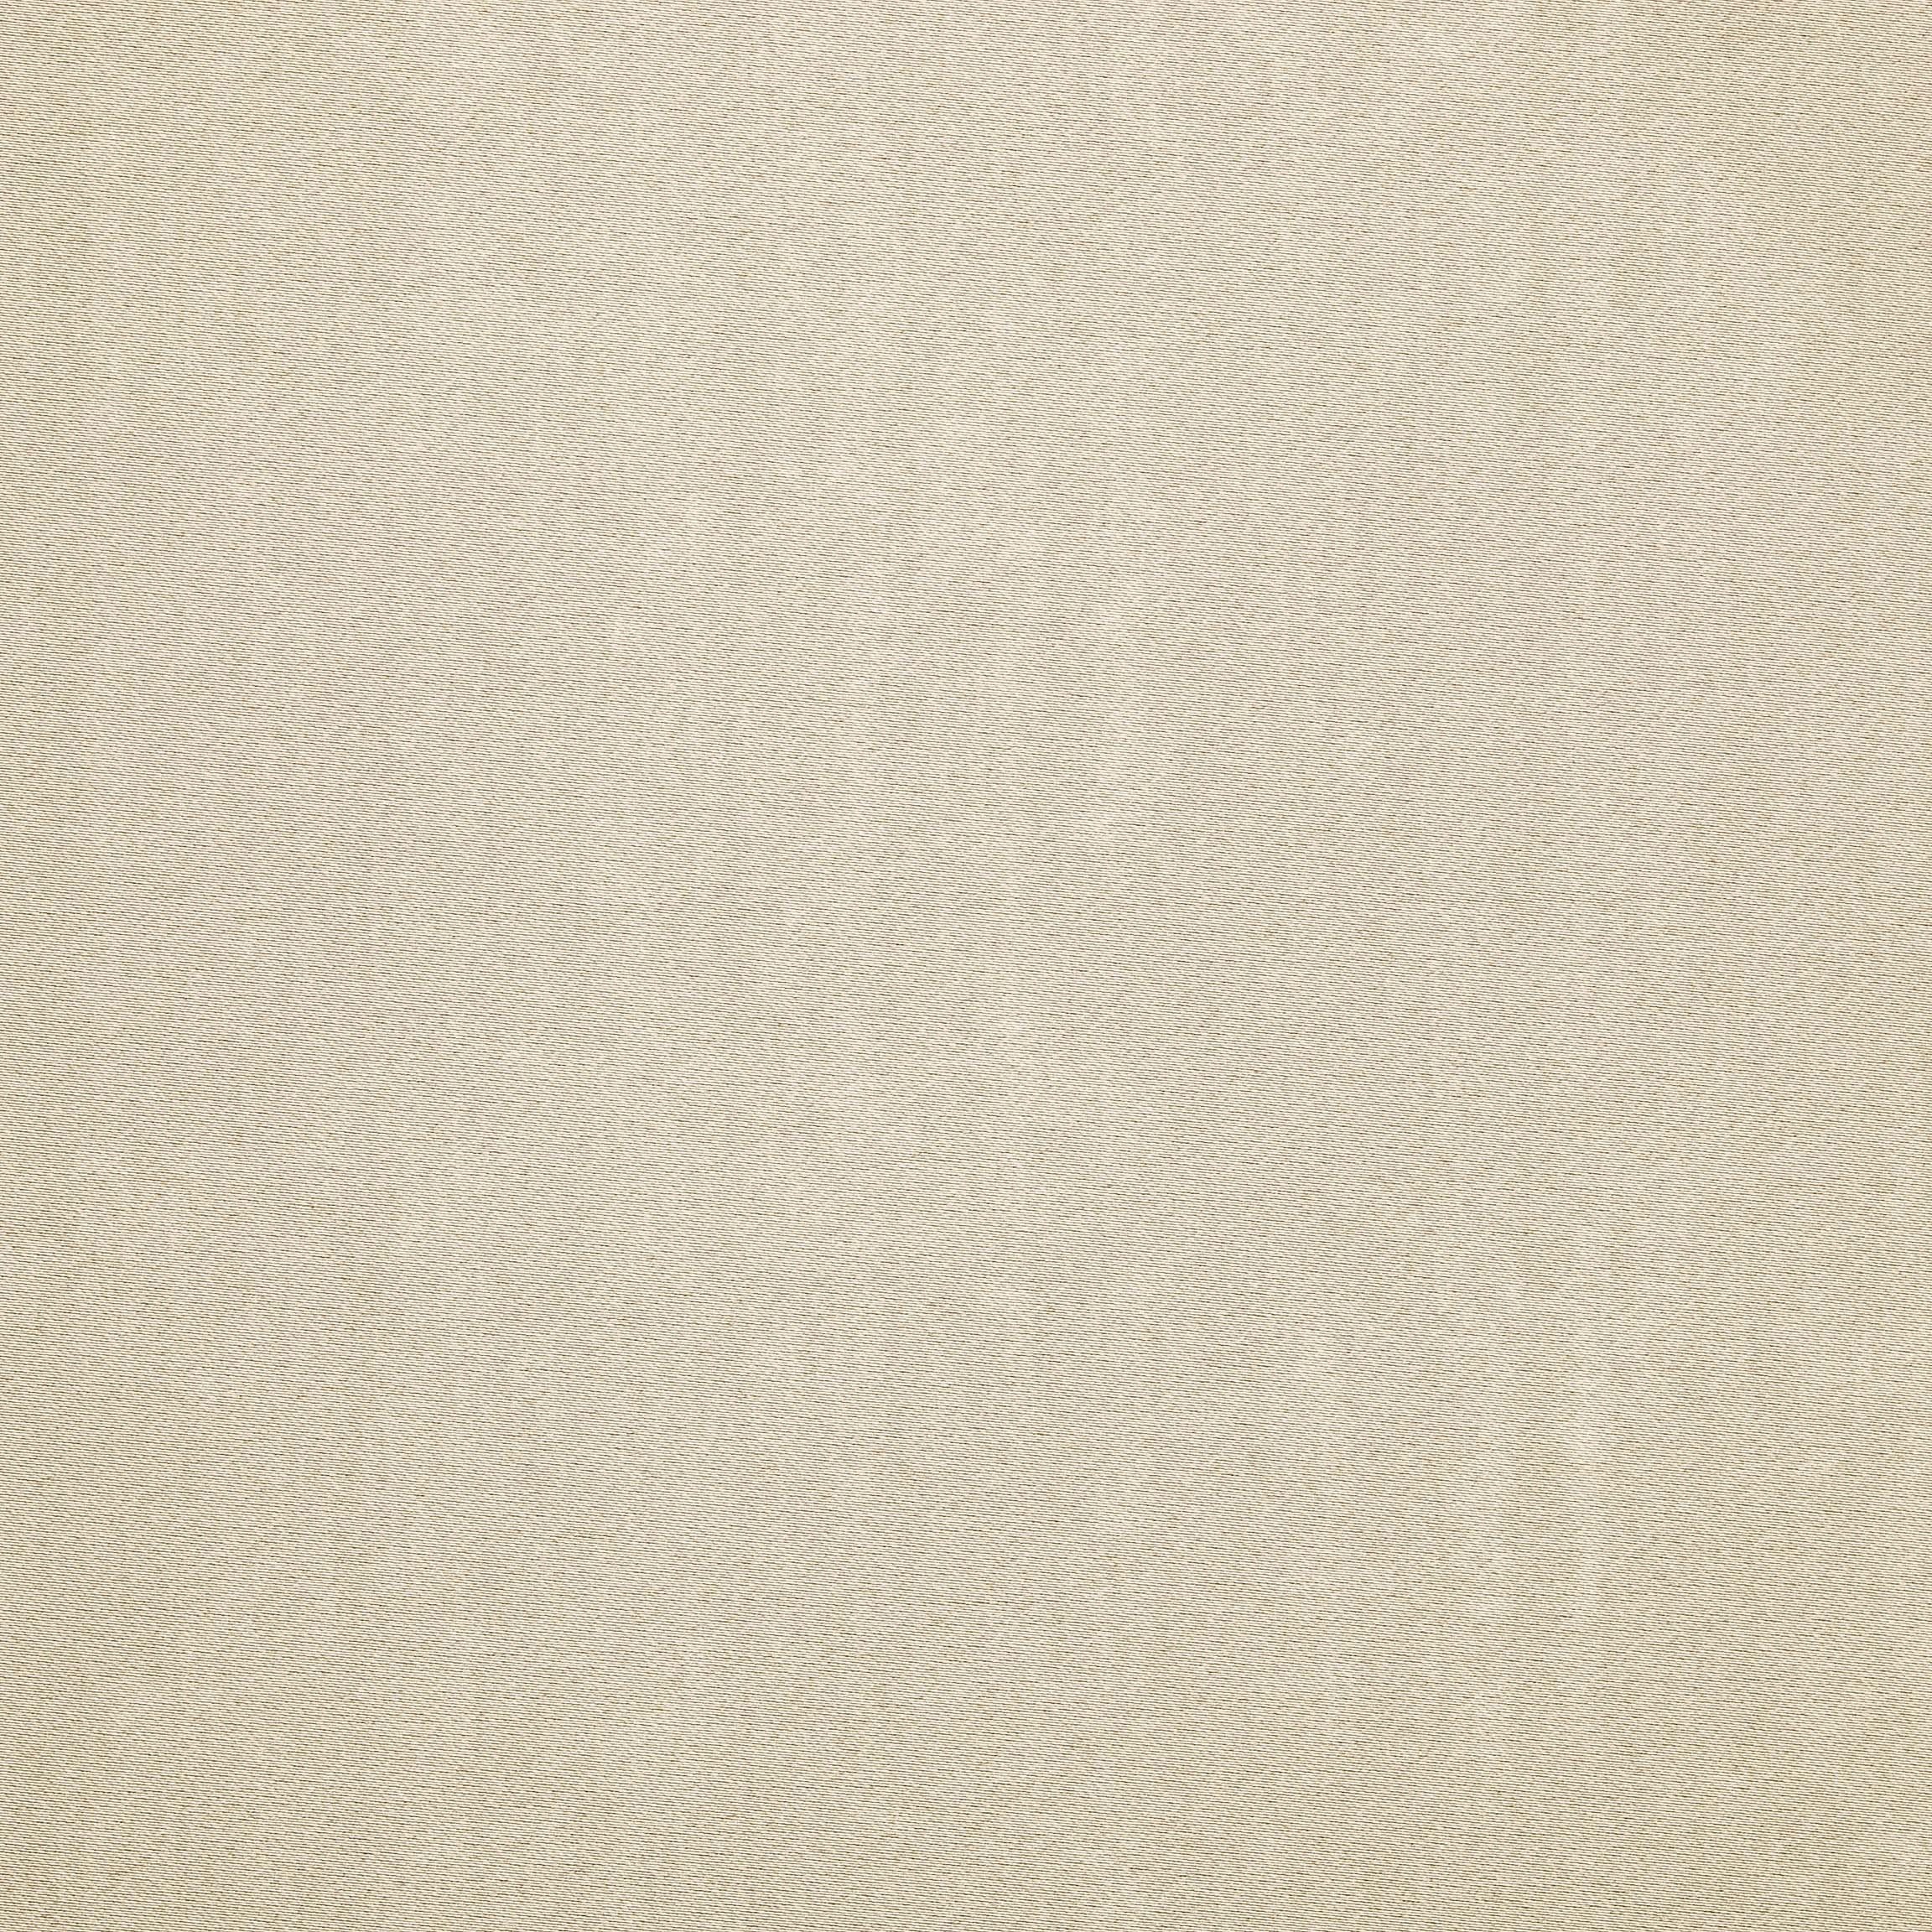  Портьерная ткань MONTREAL PEARL, ширина 280 см  - Фото